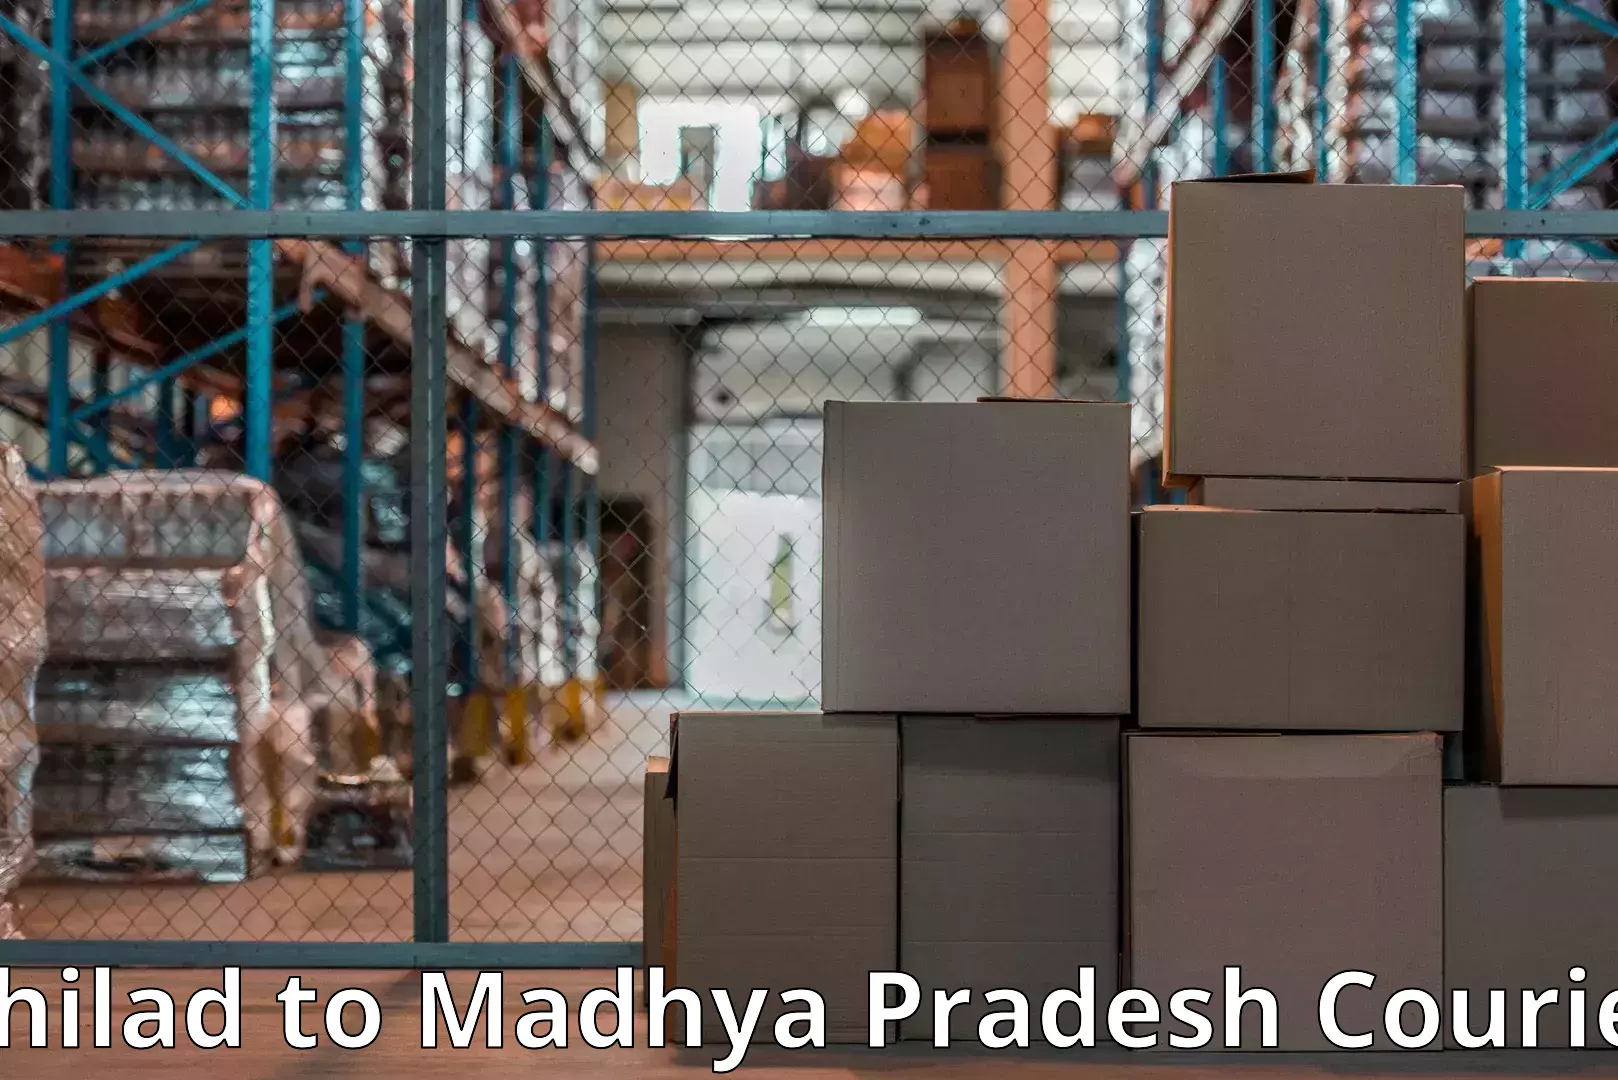 Reliable goods transport in Bhilad to Mandsaur